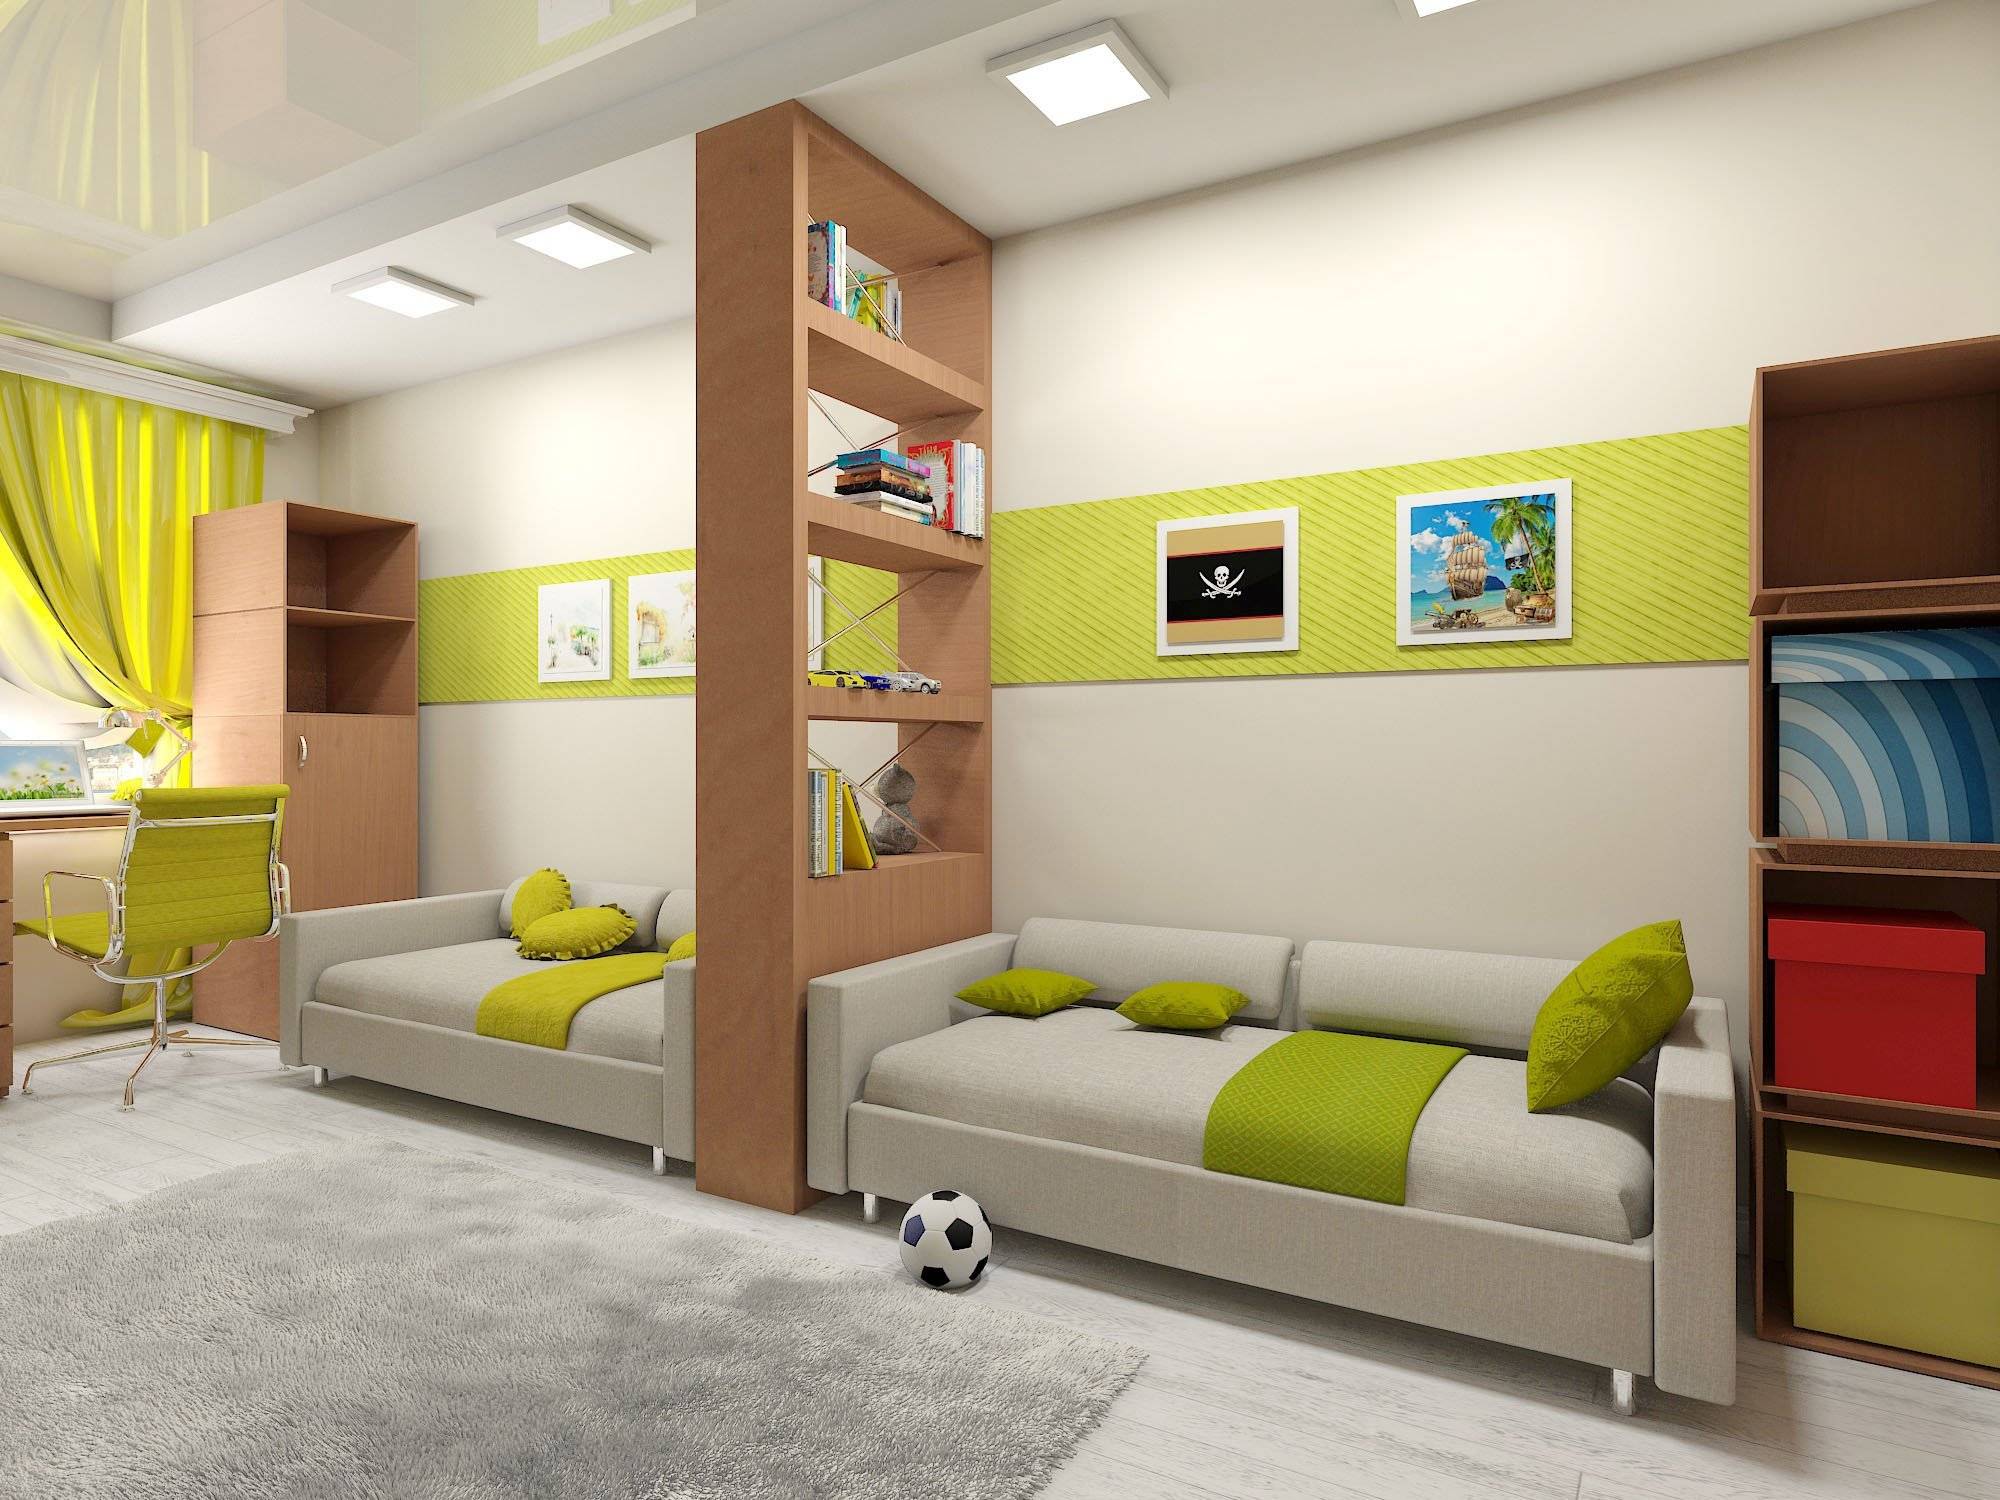 Детская комната для двоих: интерьер с рабочей зоной школьников, кровати в маленькой комнате, идеи дизайна для детей разного возраста - 36 фото